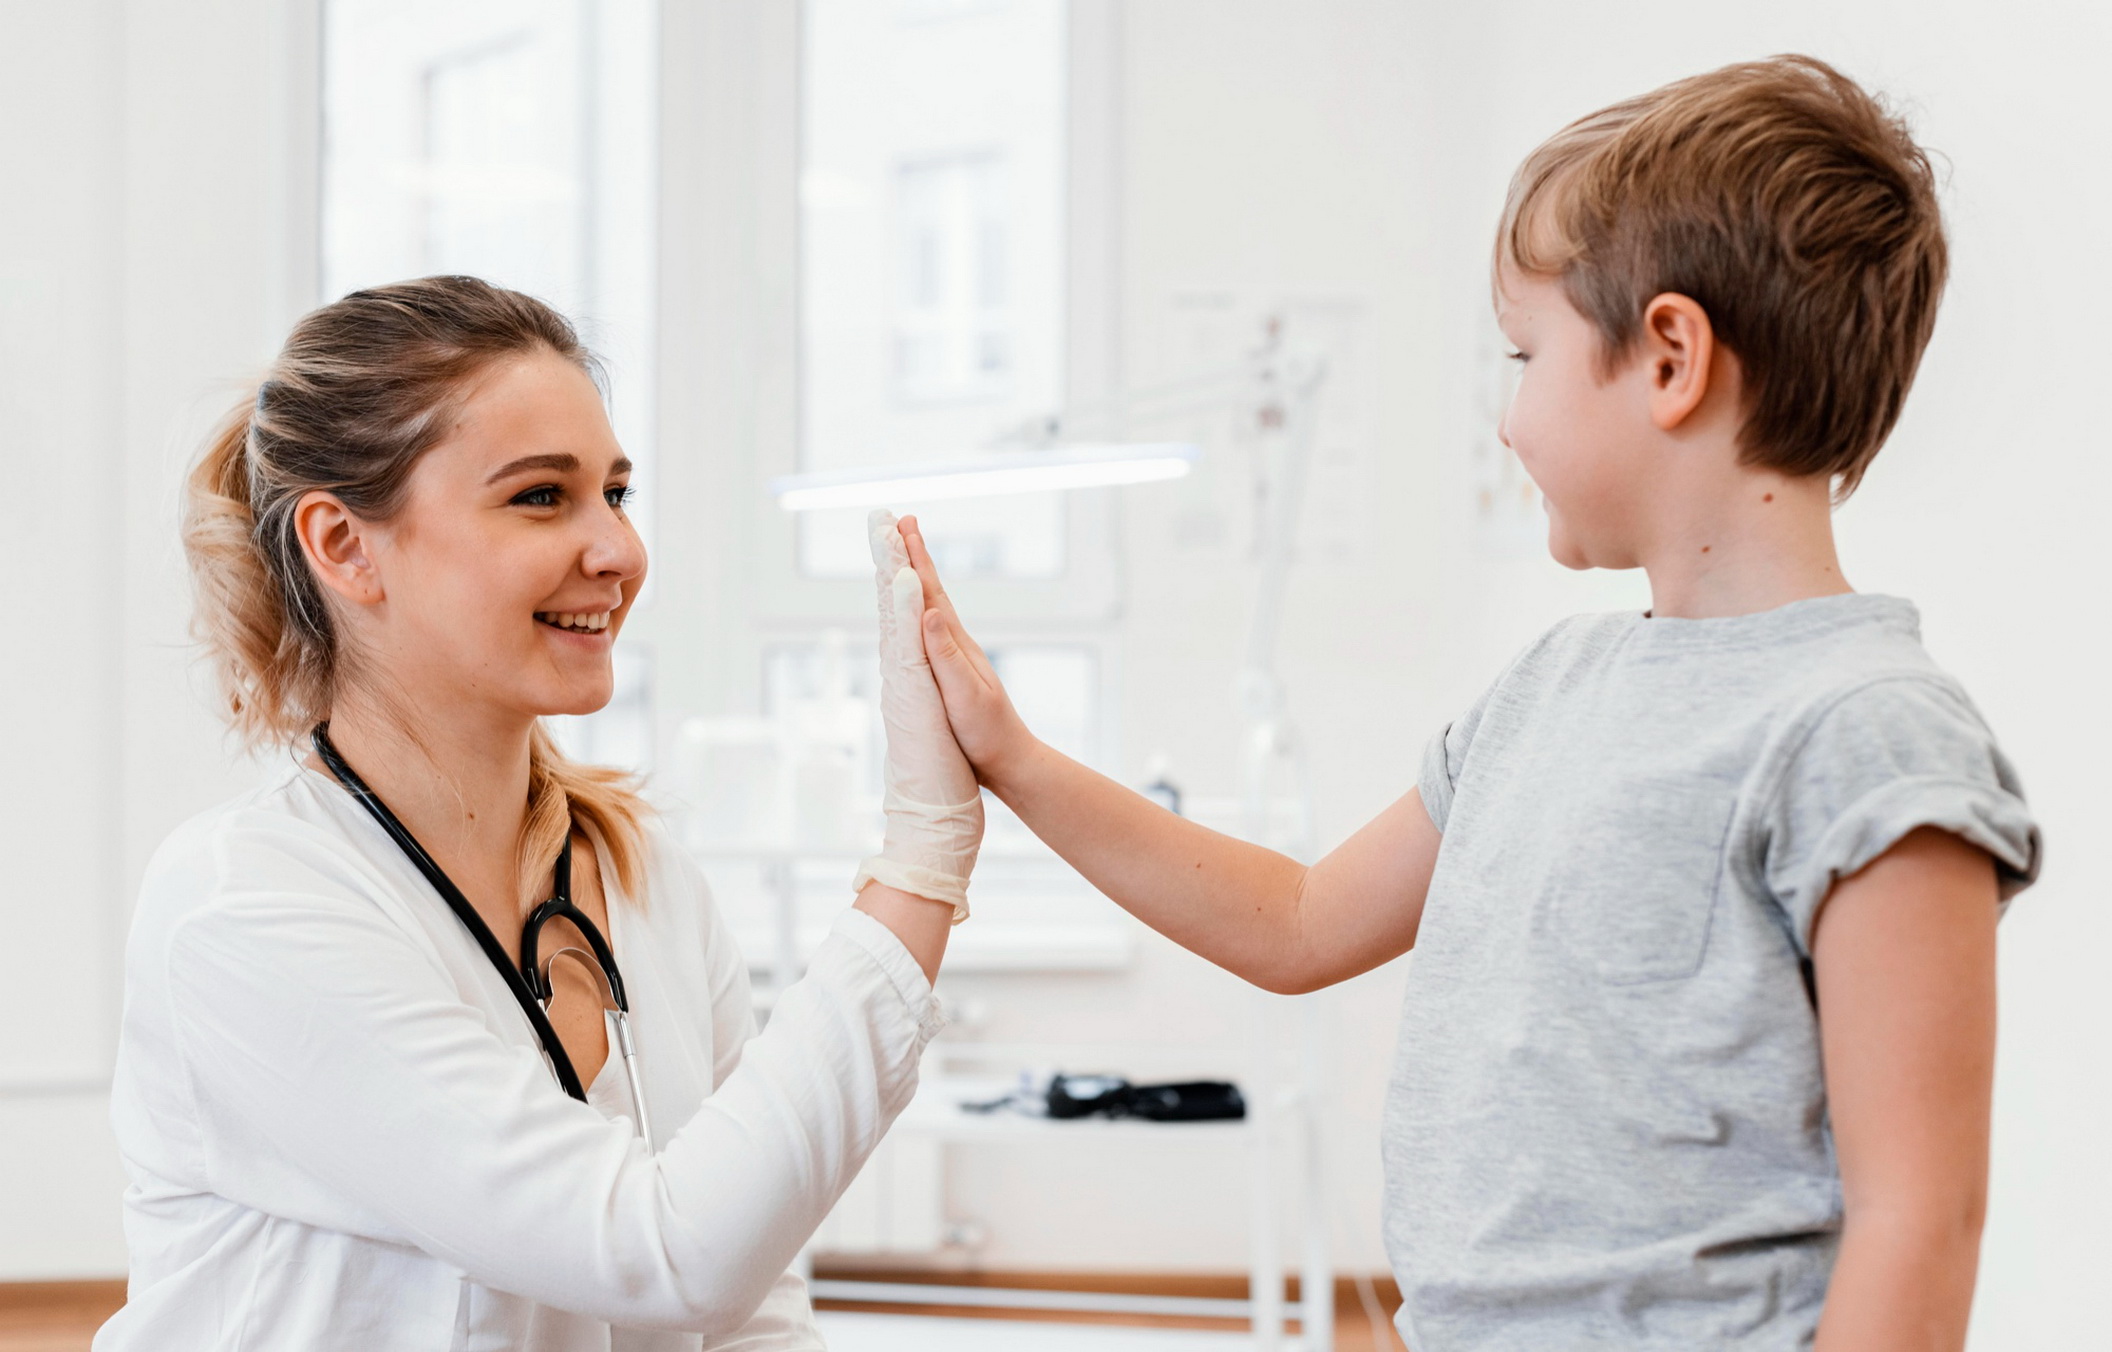 Радостный ребёнок и медсестра в медицинском кабинете